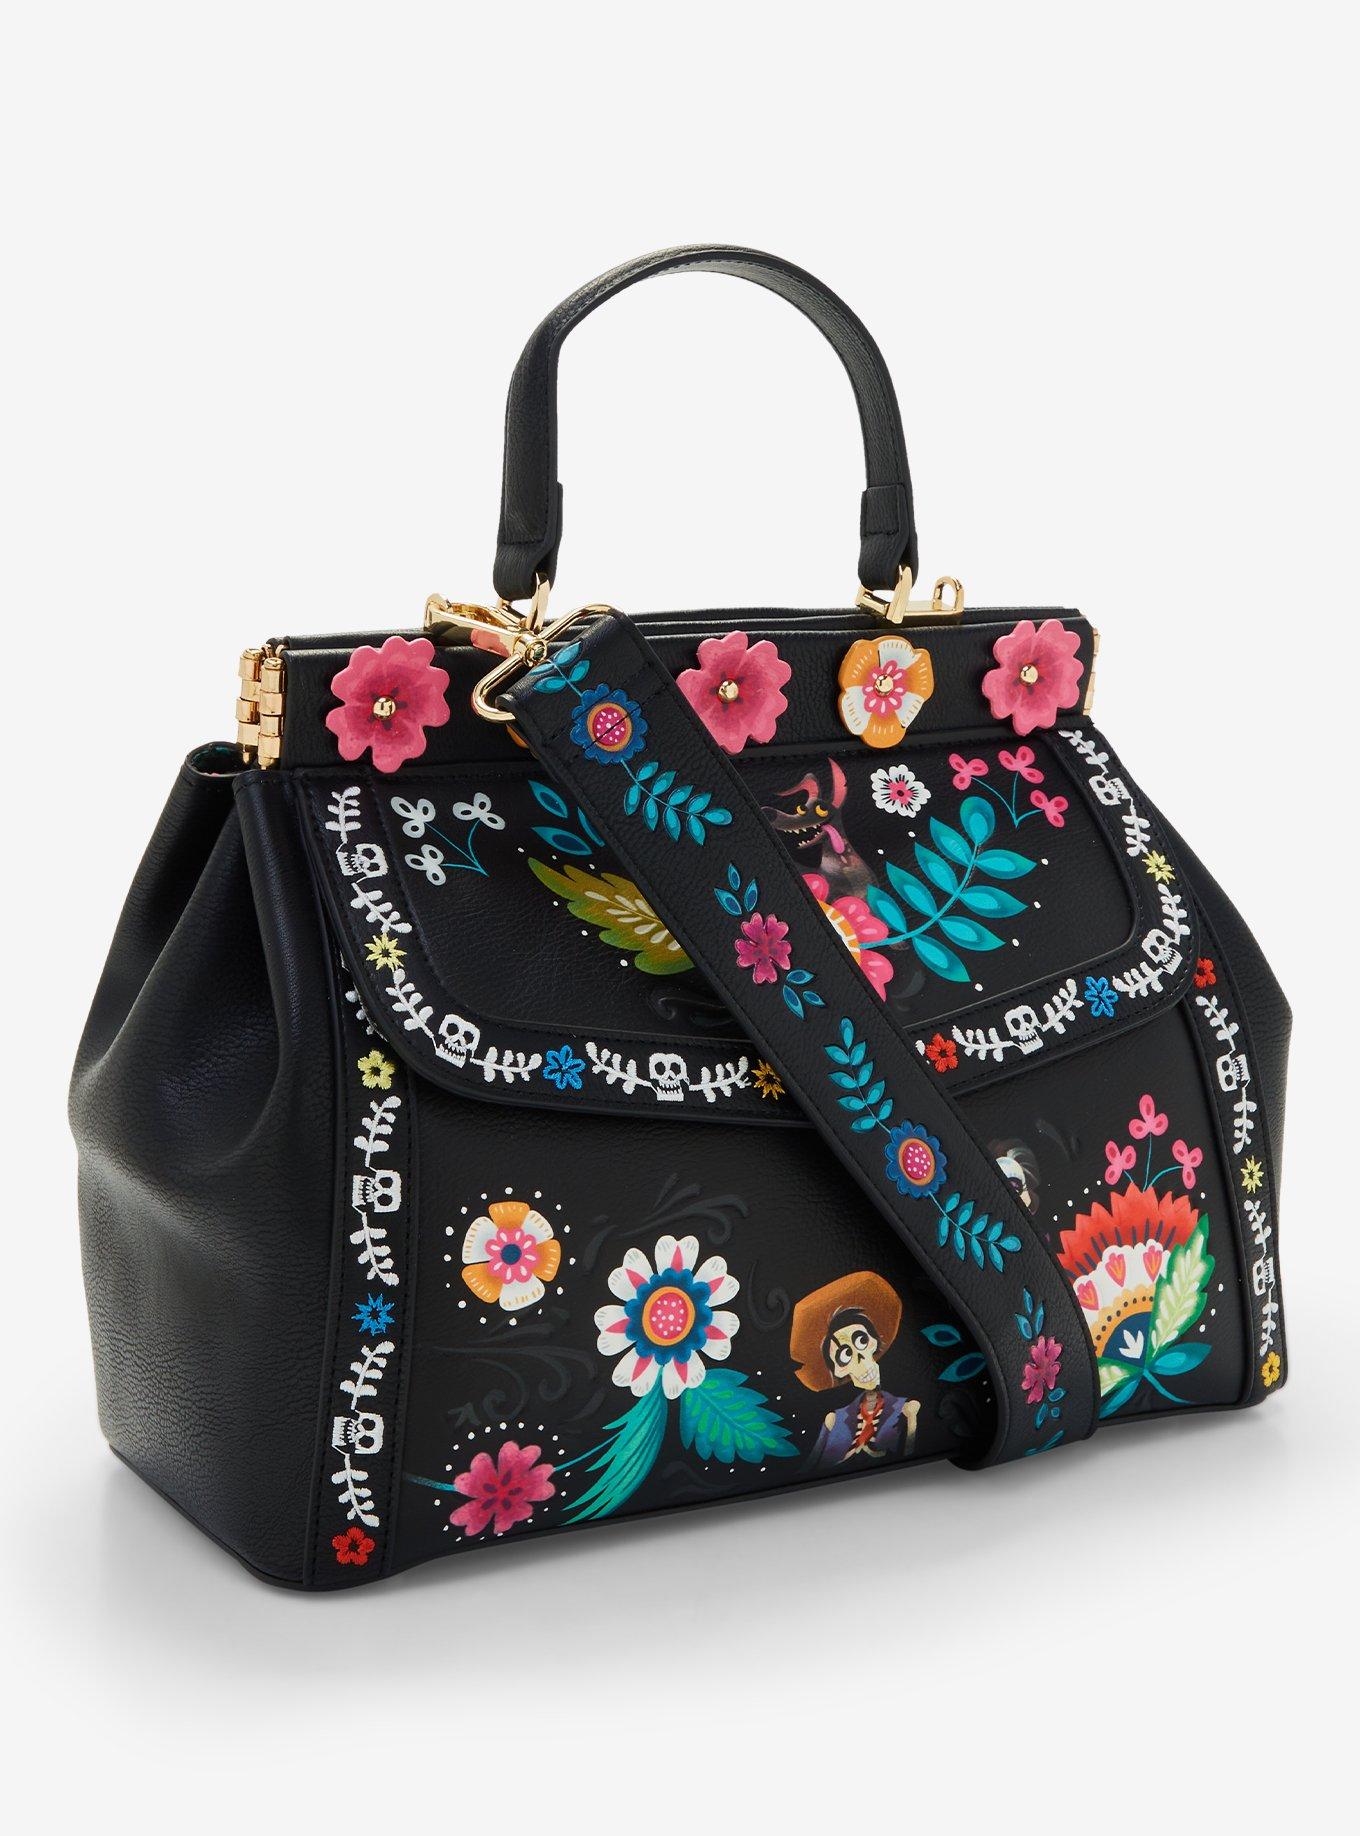 Our Universe Disney Pixar Coco Floral Handbag - BoxLunch Exclusive, , alternate